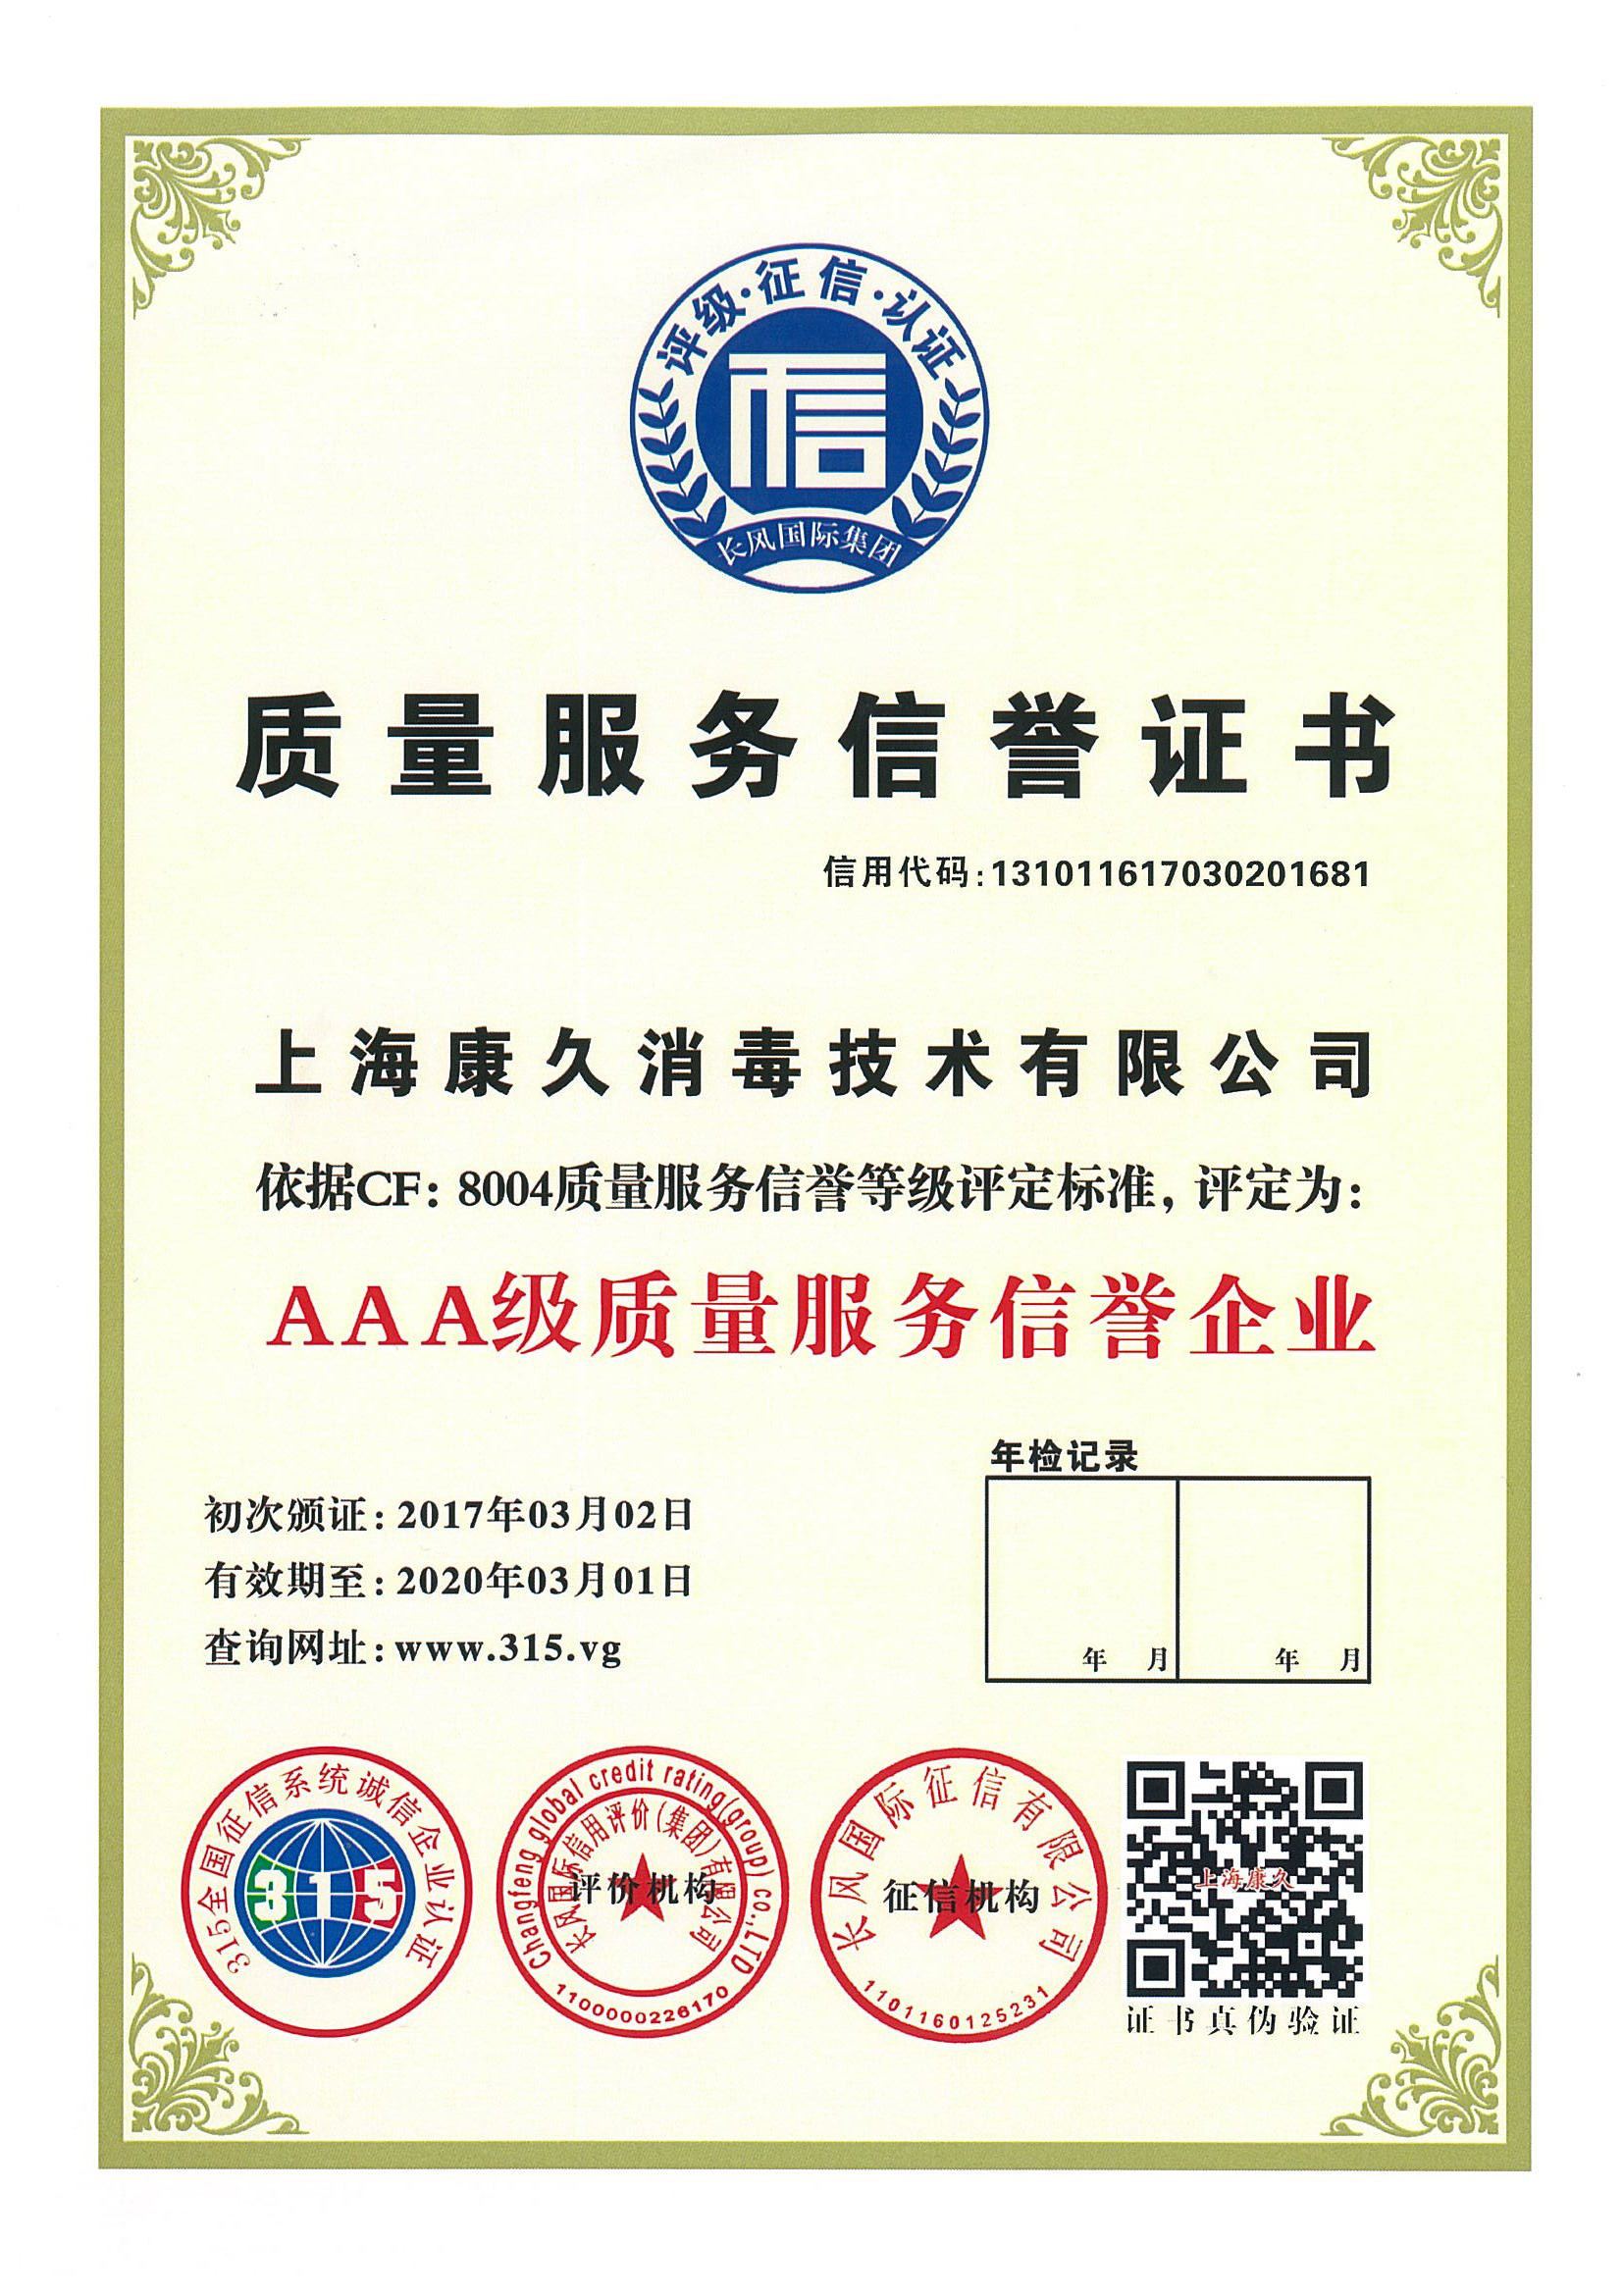 “深圳质量服务信誉证书